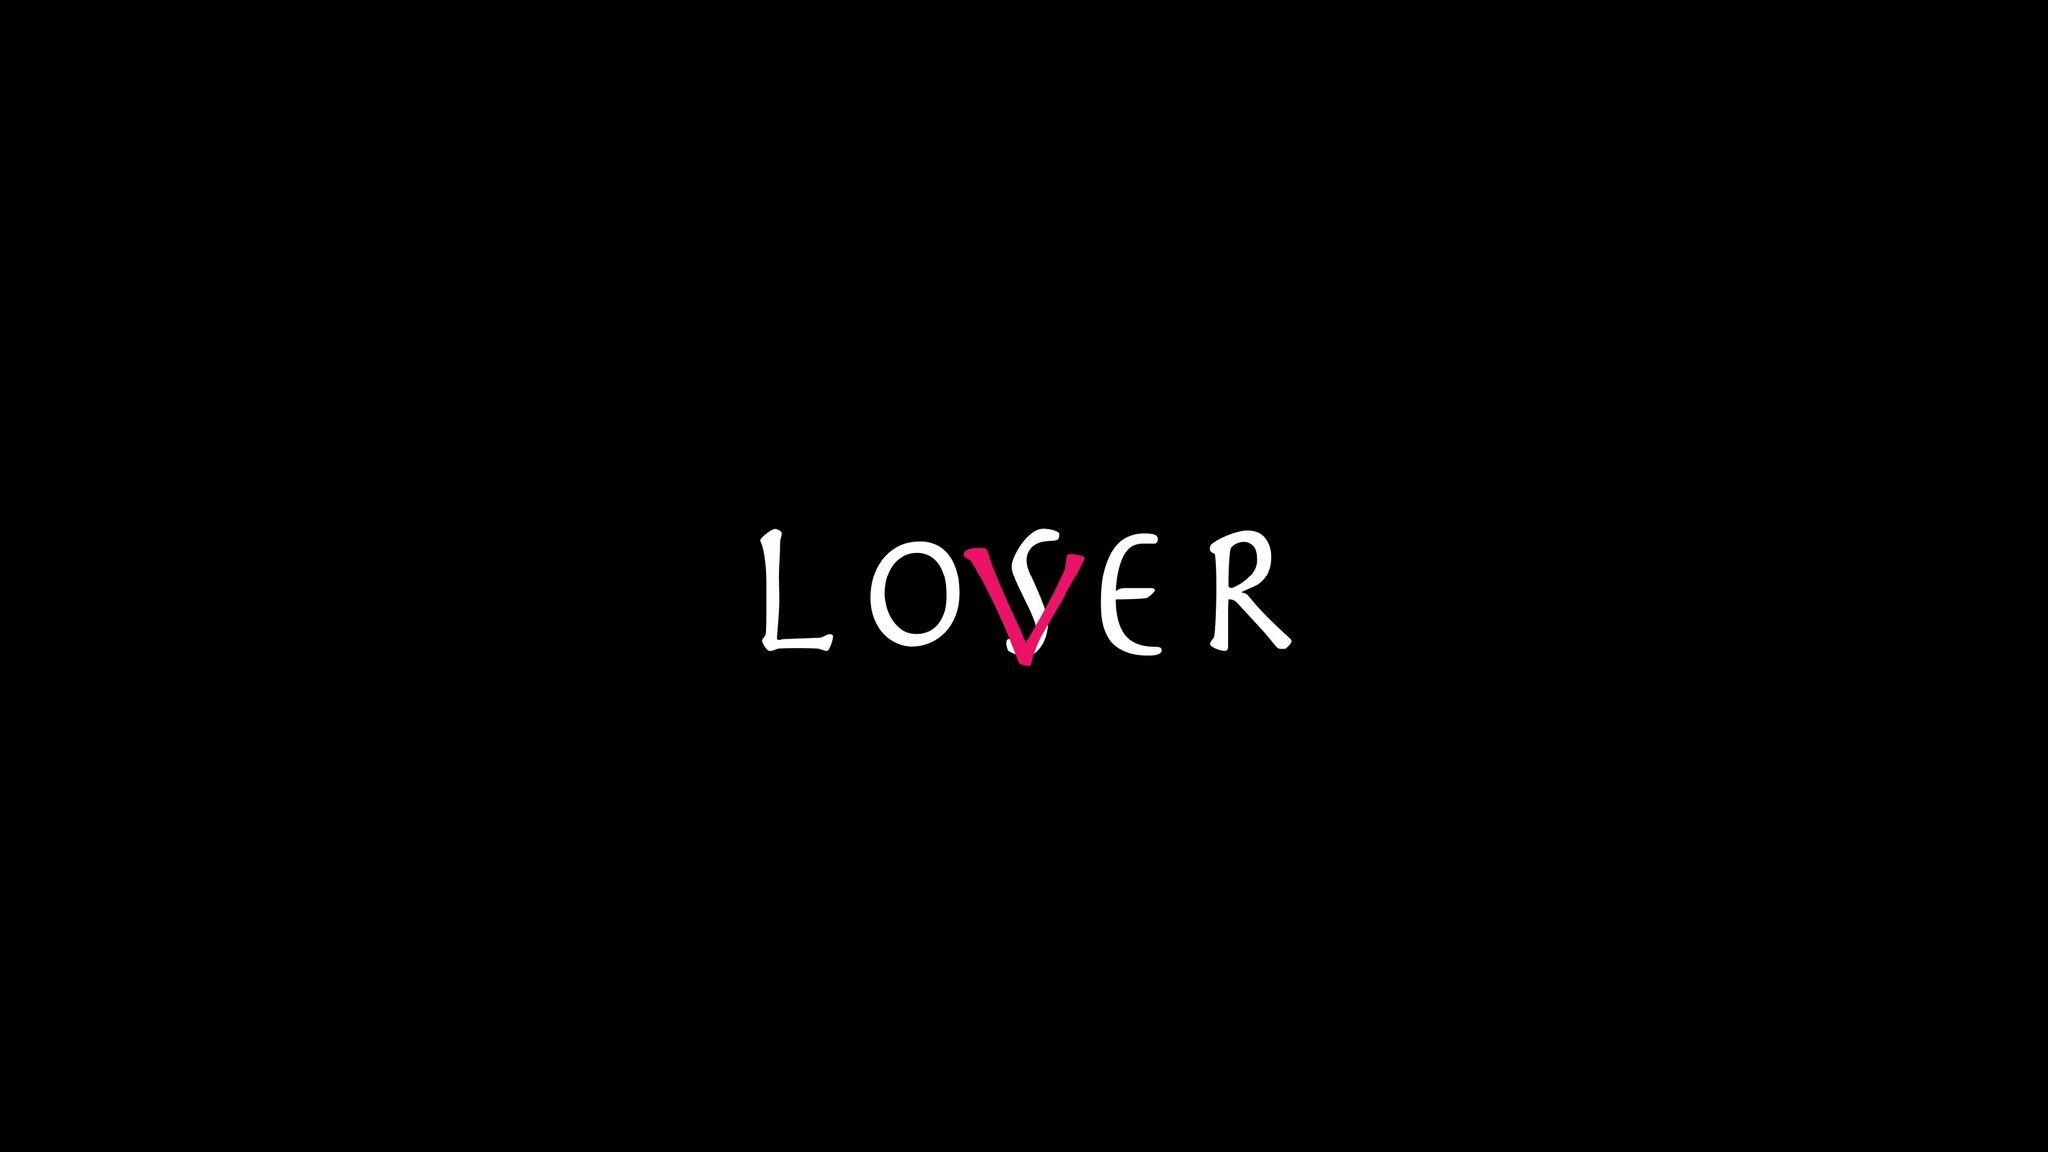 Loser / Lover otaku wallpaper